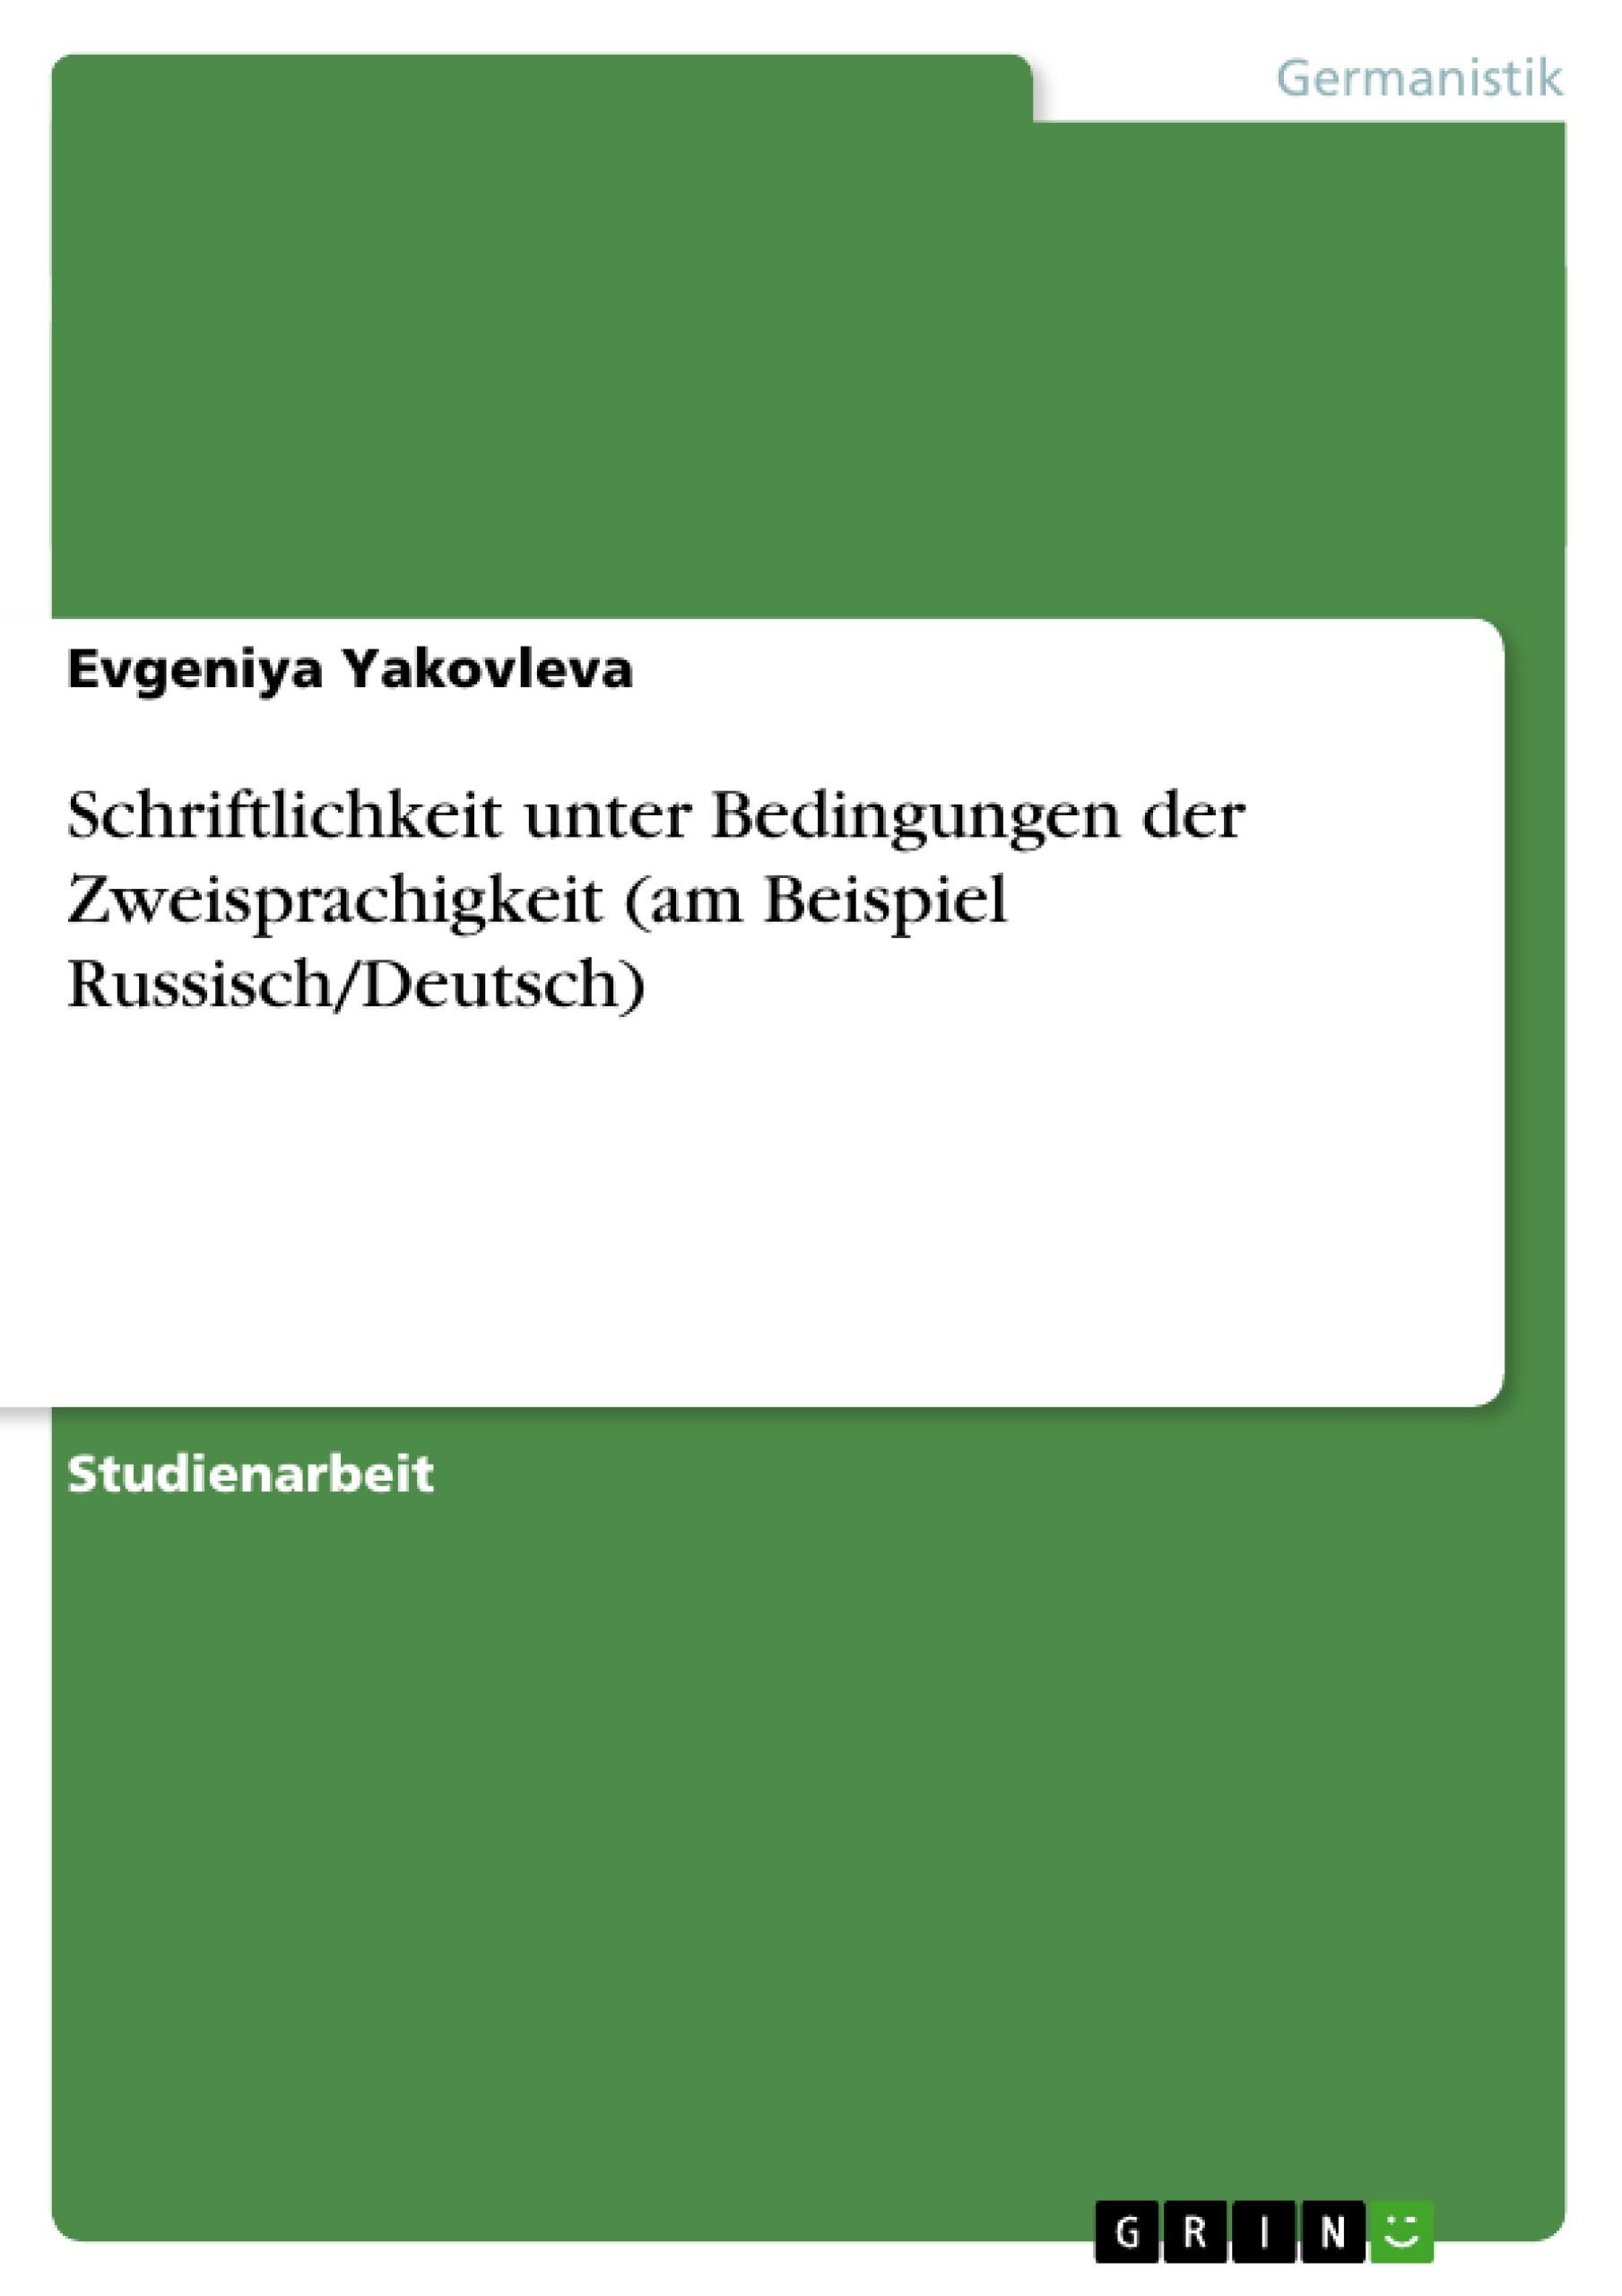 Schriftlichkeit unter Bedingungen der Zweisprachigkeit (am Beispiel Russisch/Deutsch) - Yakovleva, Evgeniya